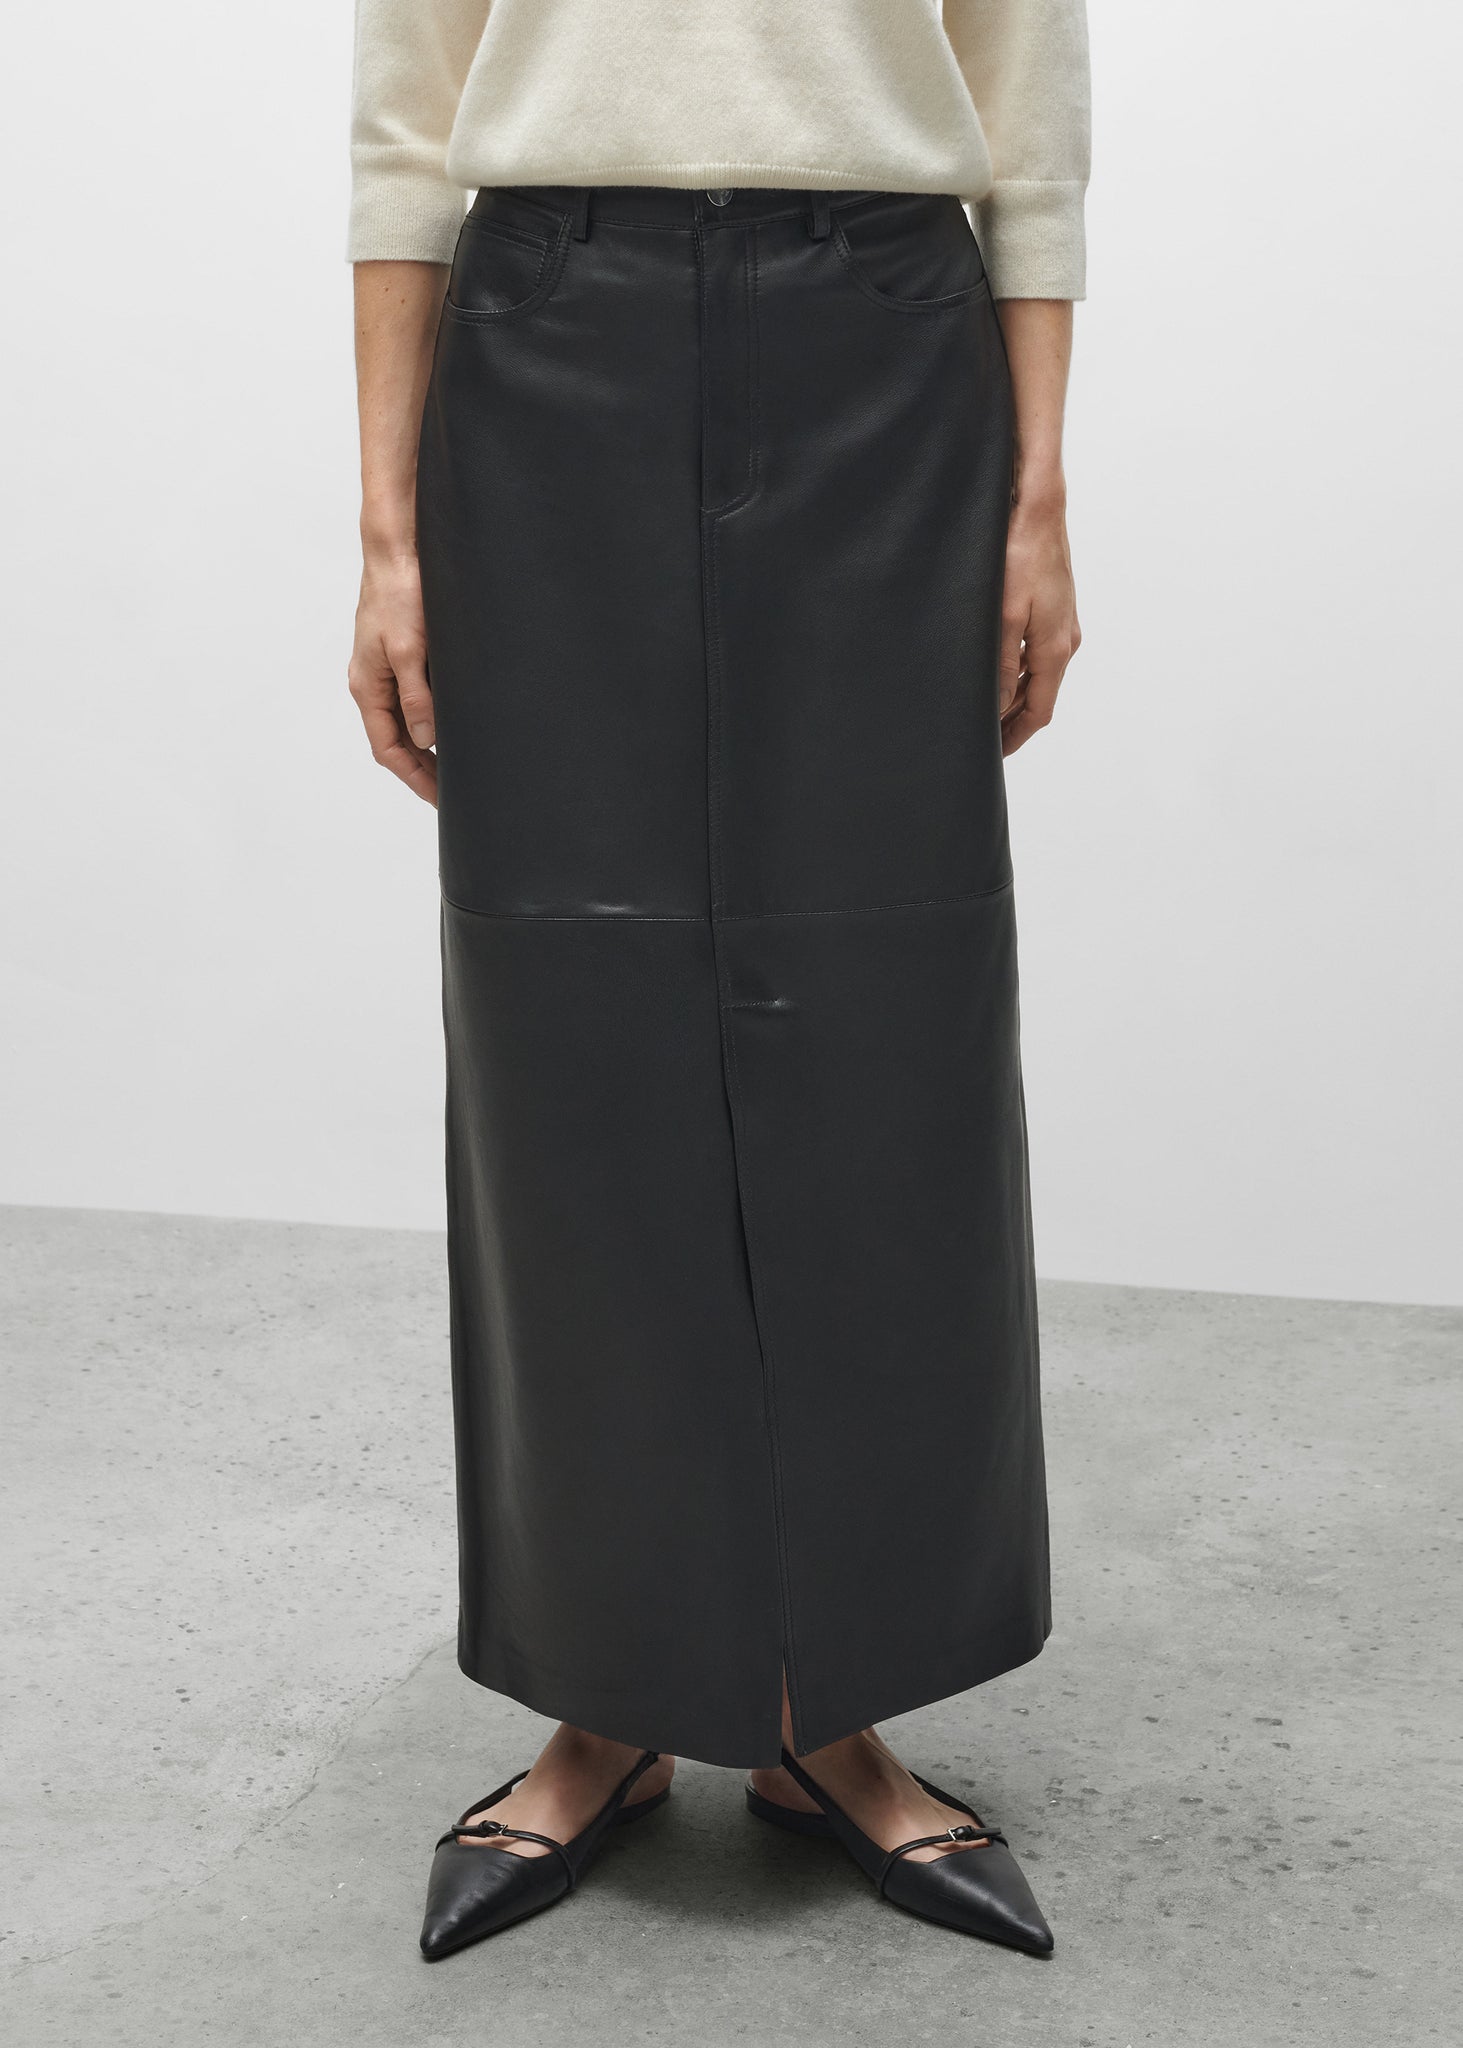 IBIZA | Leather Skirt